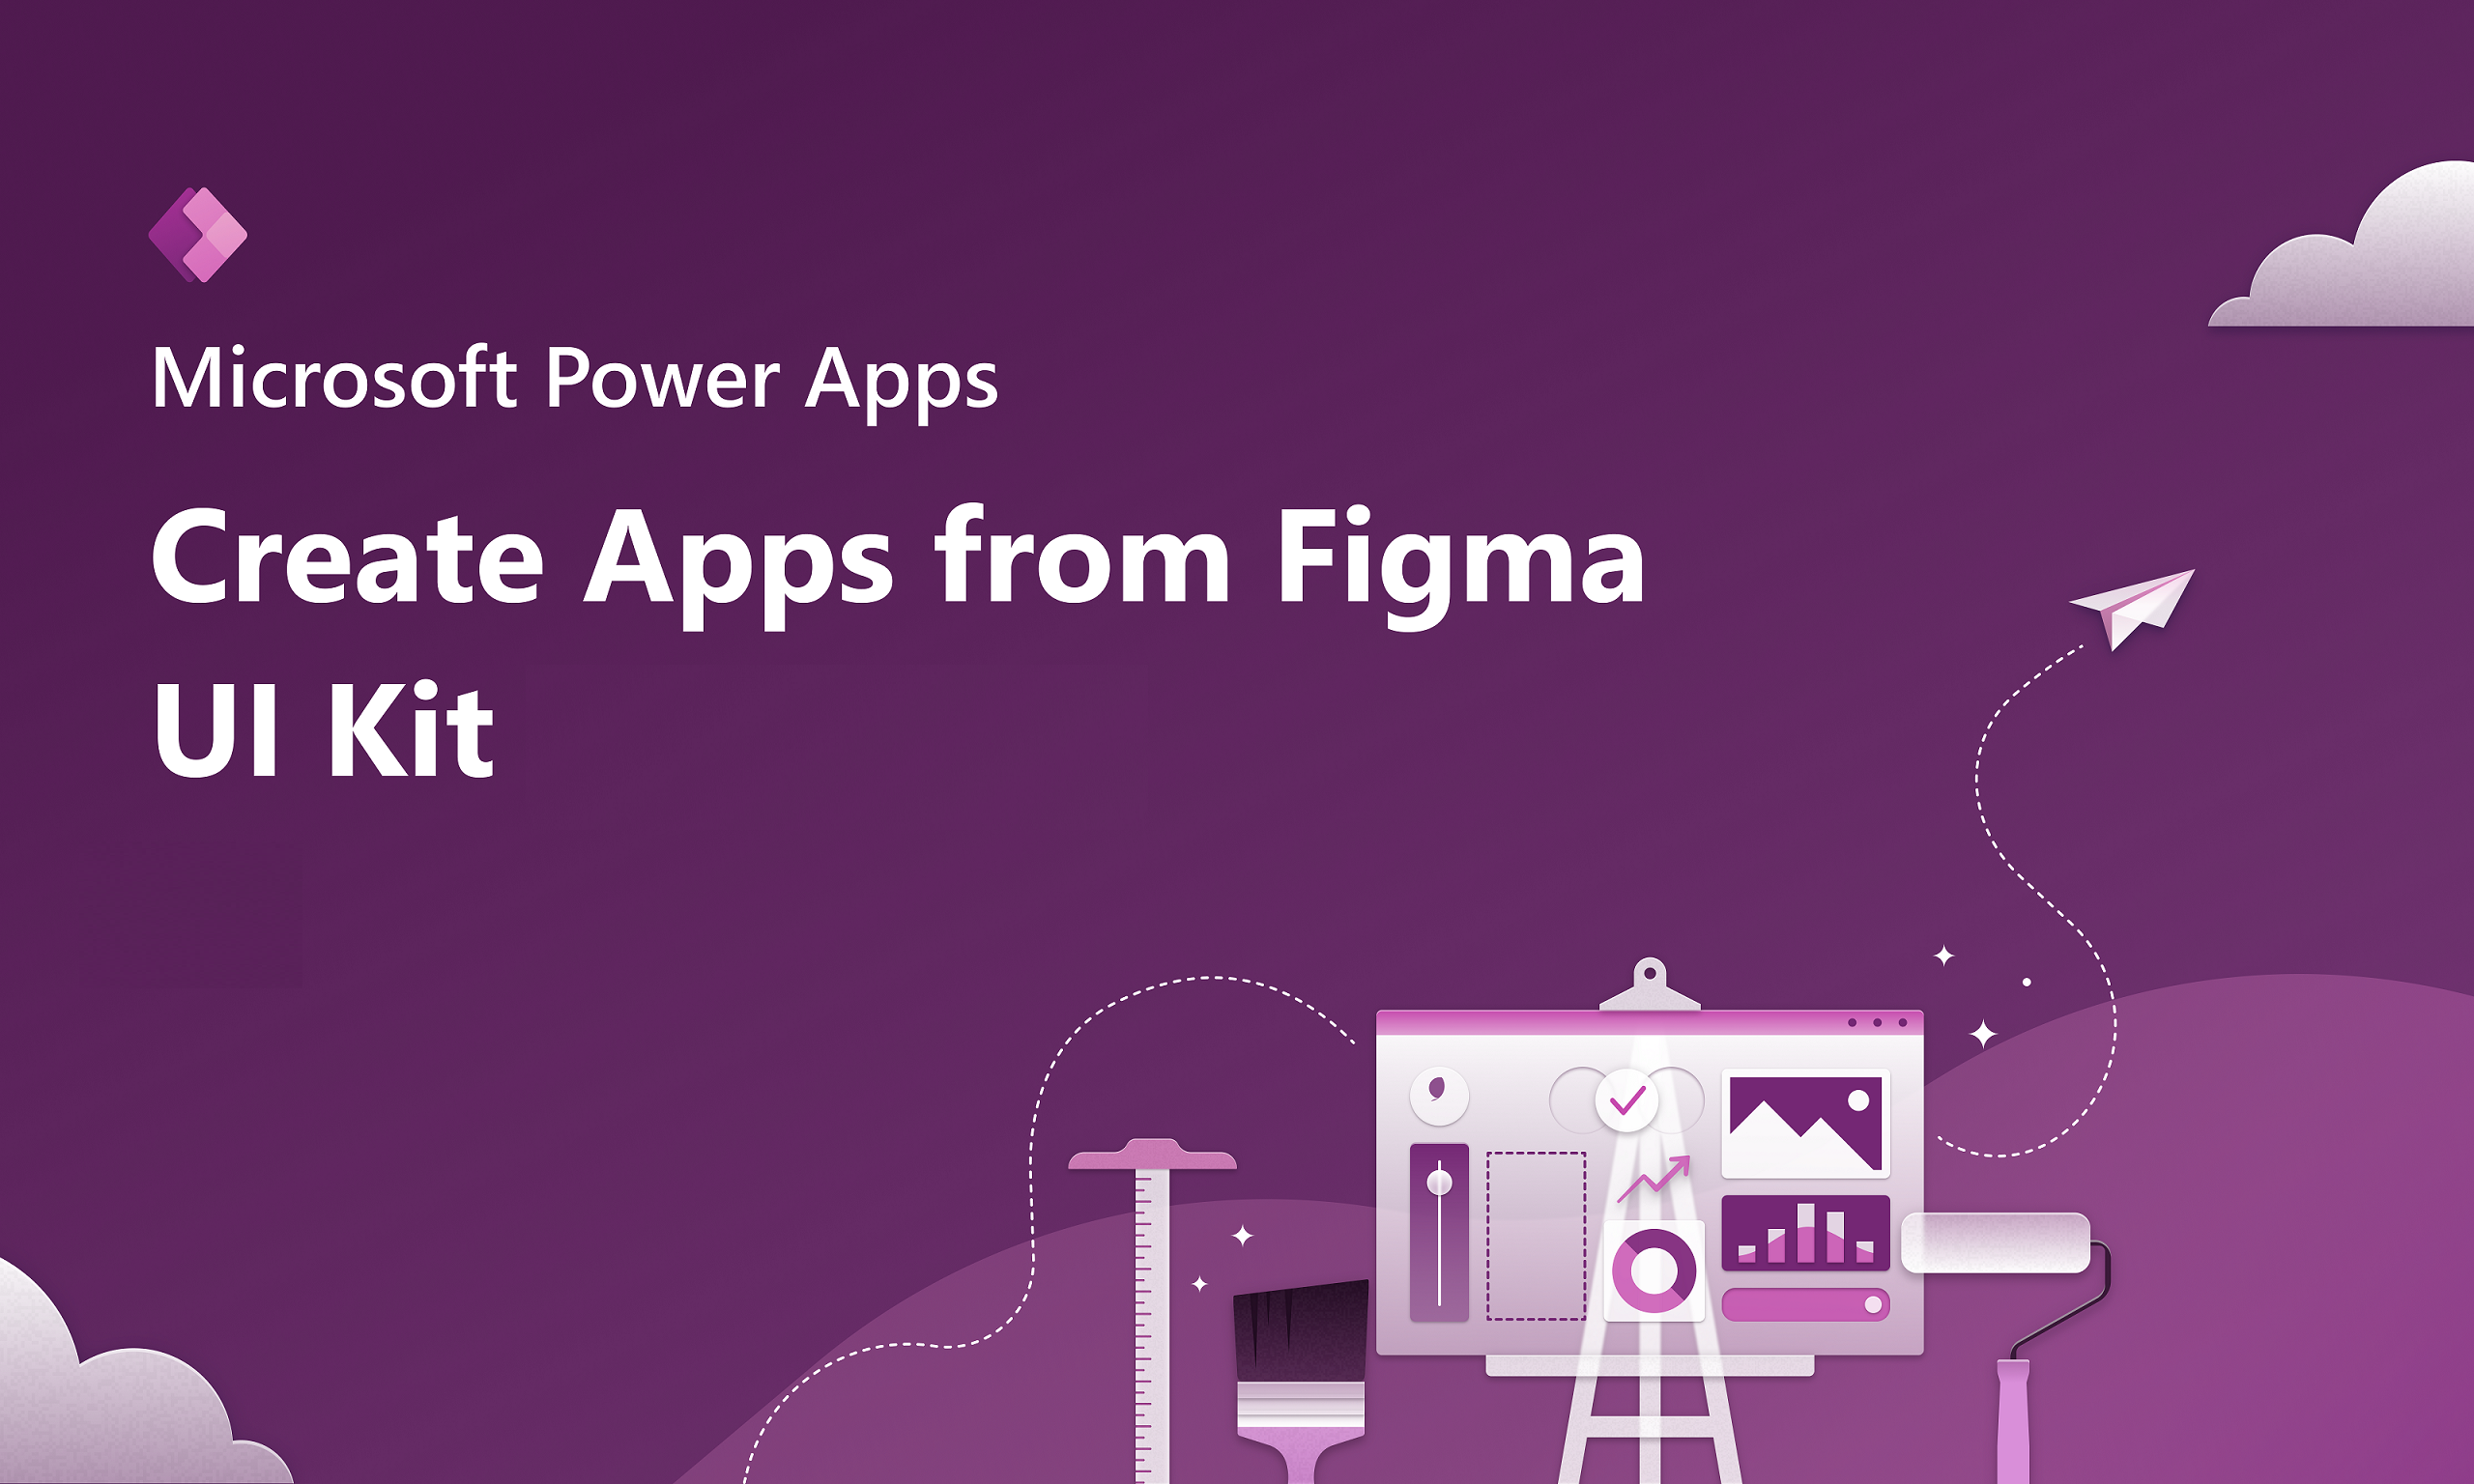 Tworzenie aplikacji za pomocą interfejsu użytkownika zestawu Figma.